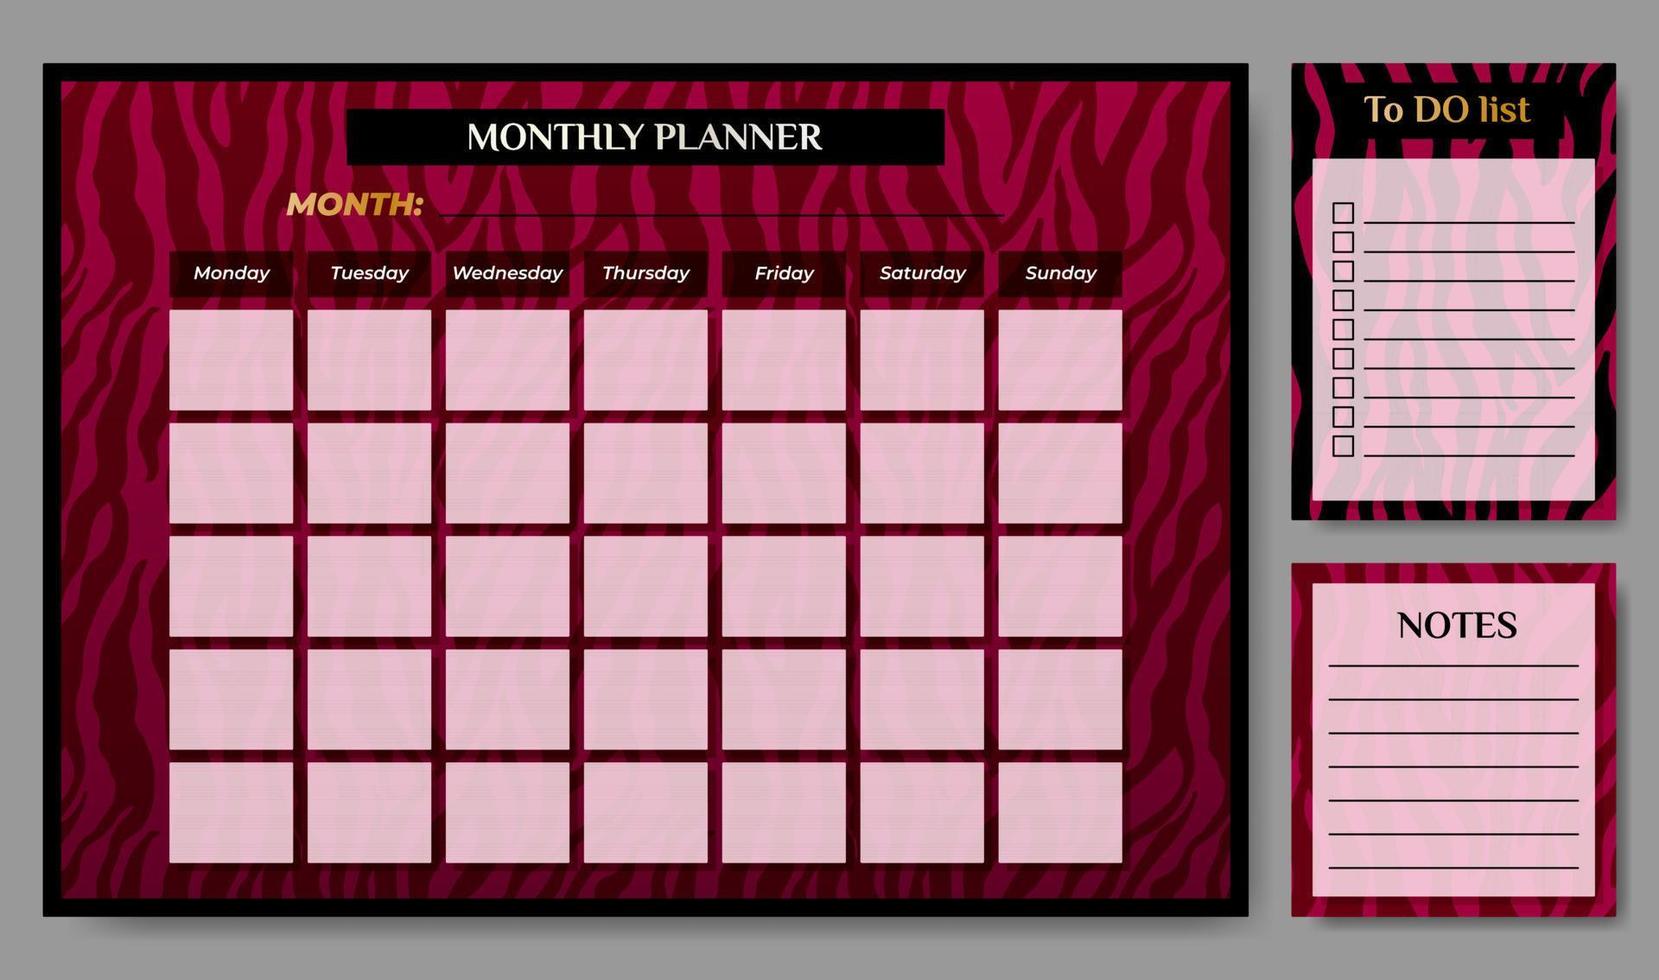 lyxig en gång i månaden planerare med till do lista och anteckningar på zebra bakgrund. vektor illustration. planerare för företag och privat använda sig av.